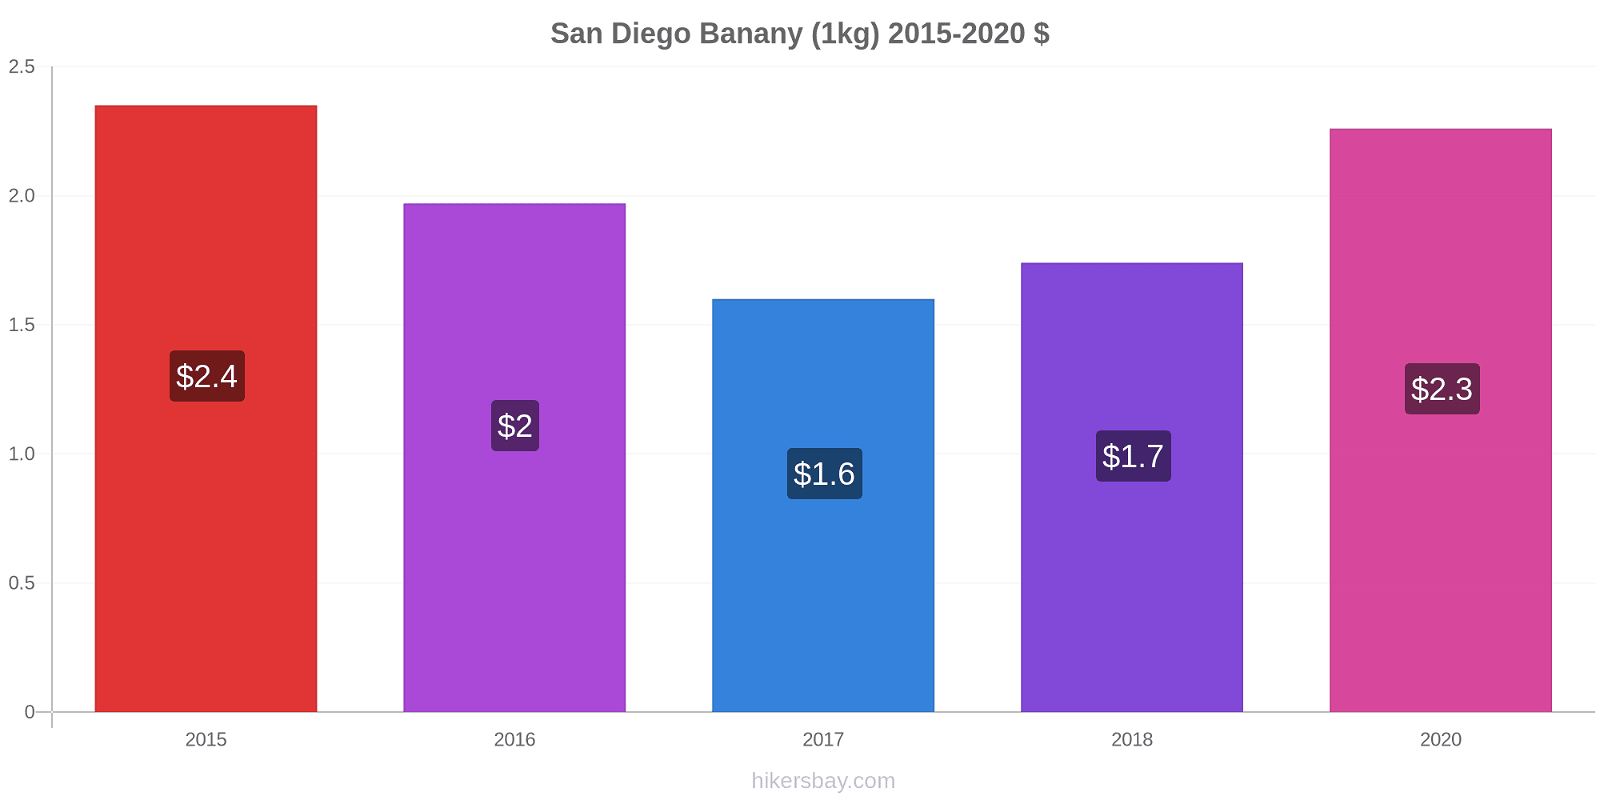 San Diego zmiany cen Banany (1kg) hikersbay.com